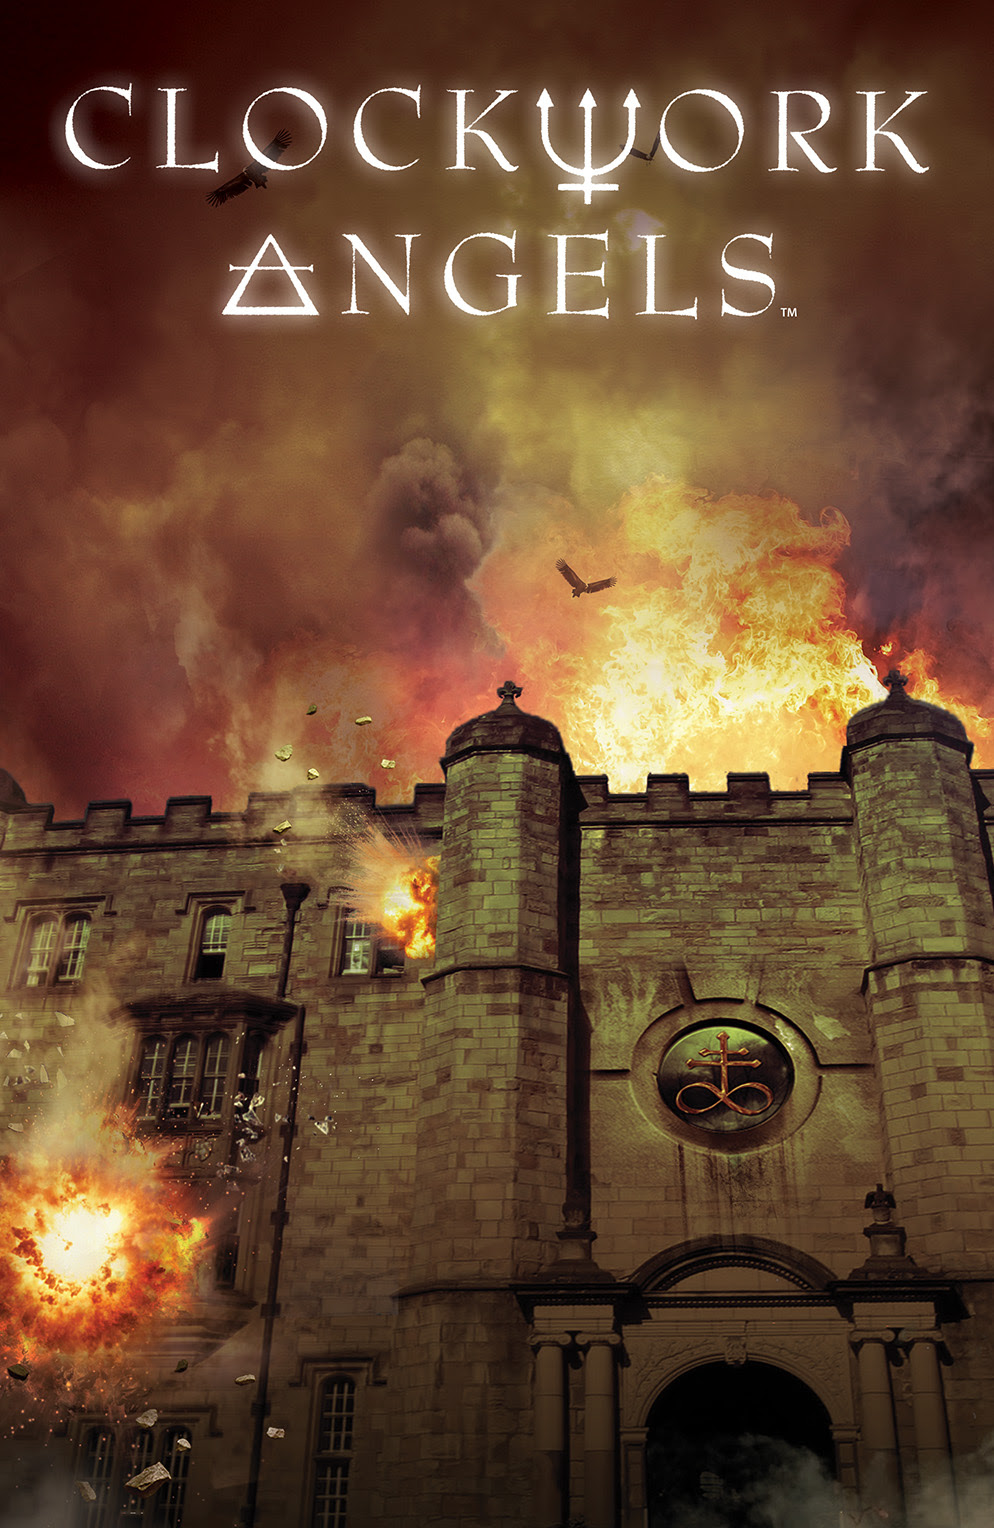 CLOCKWORK ANGELS #4 Cover by Hugh Syme